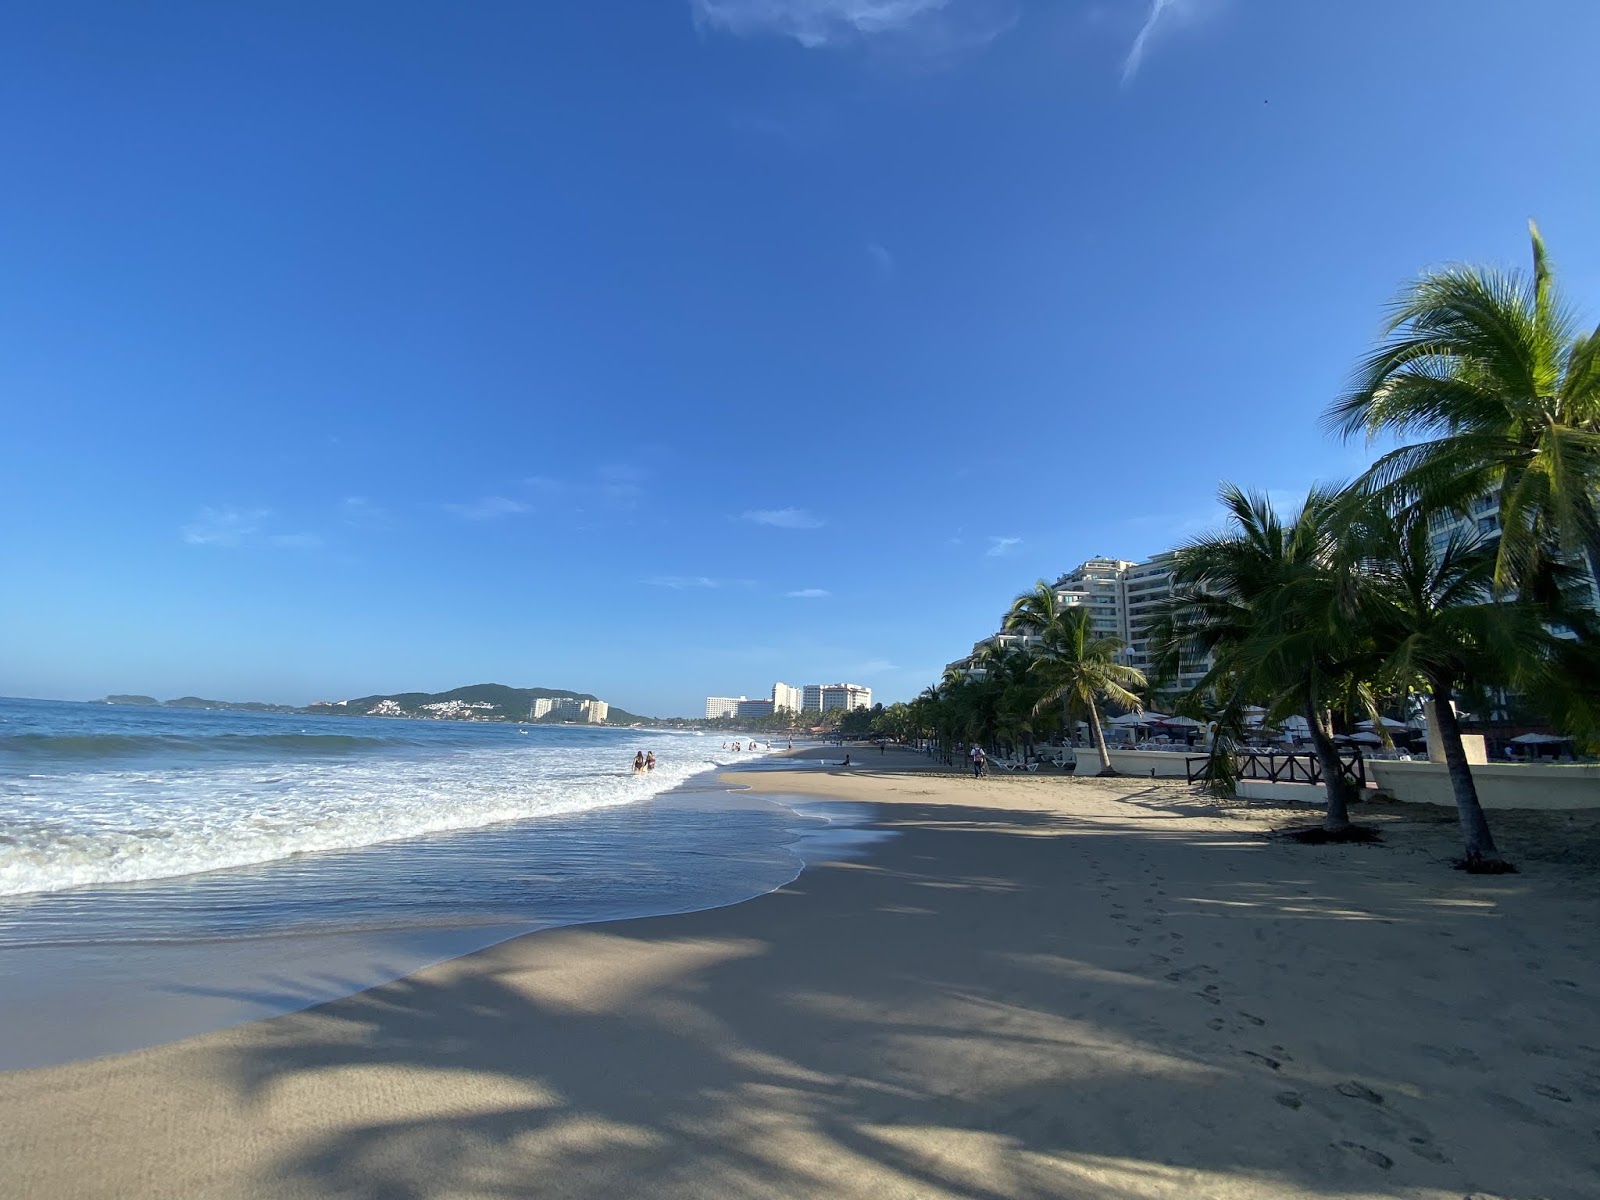 La Cucaracha beach'in fotoğrafı imkanlar alanı